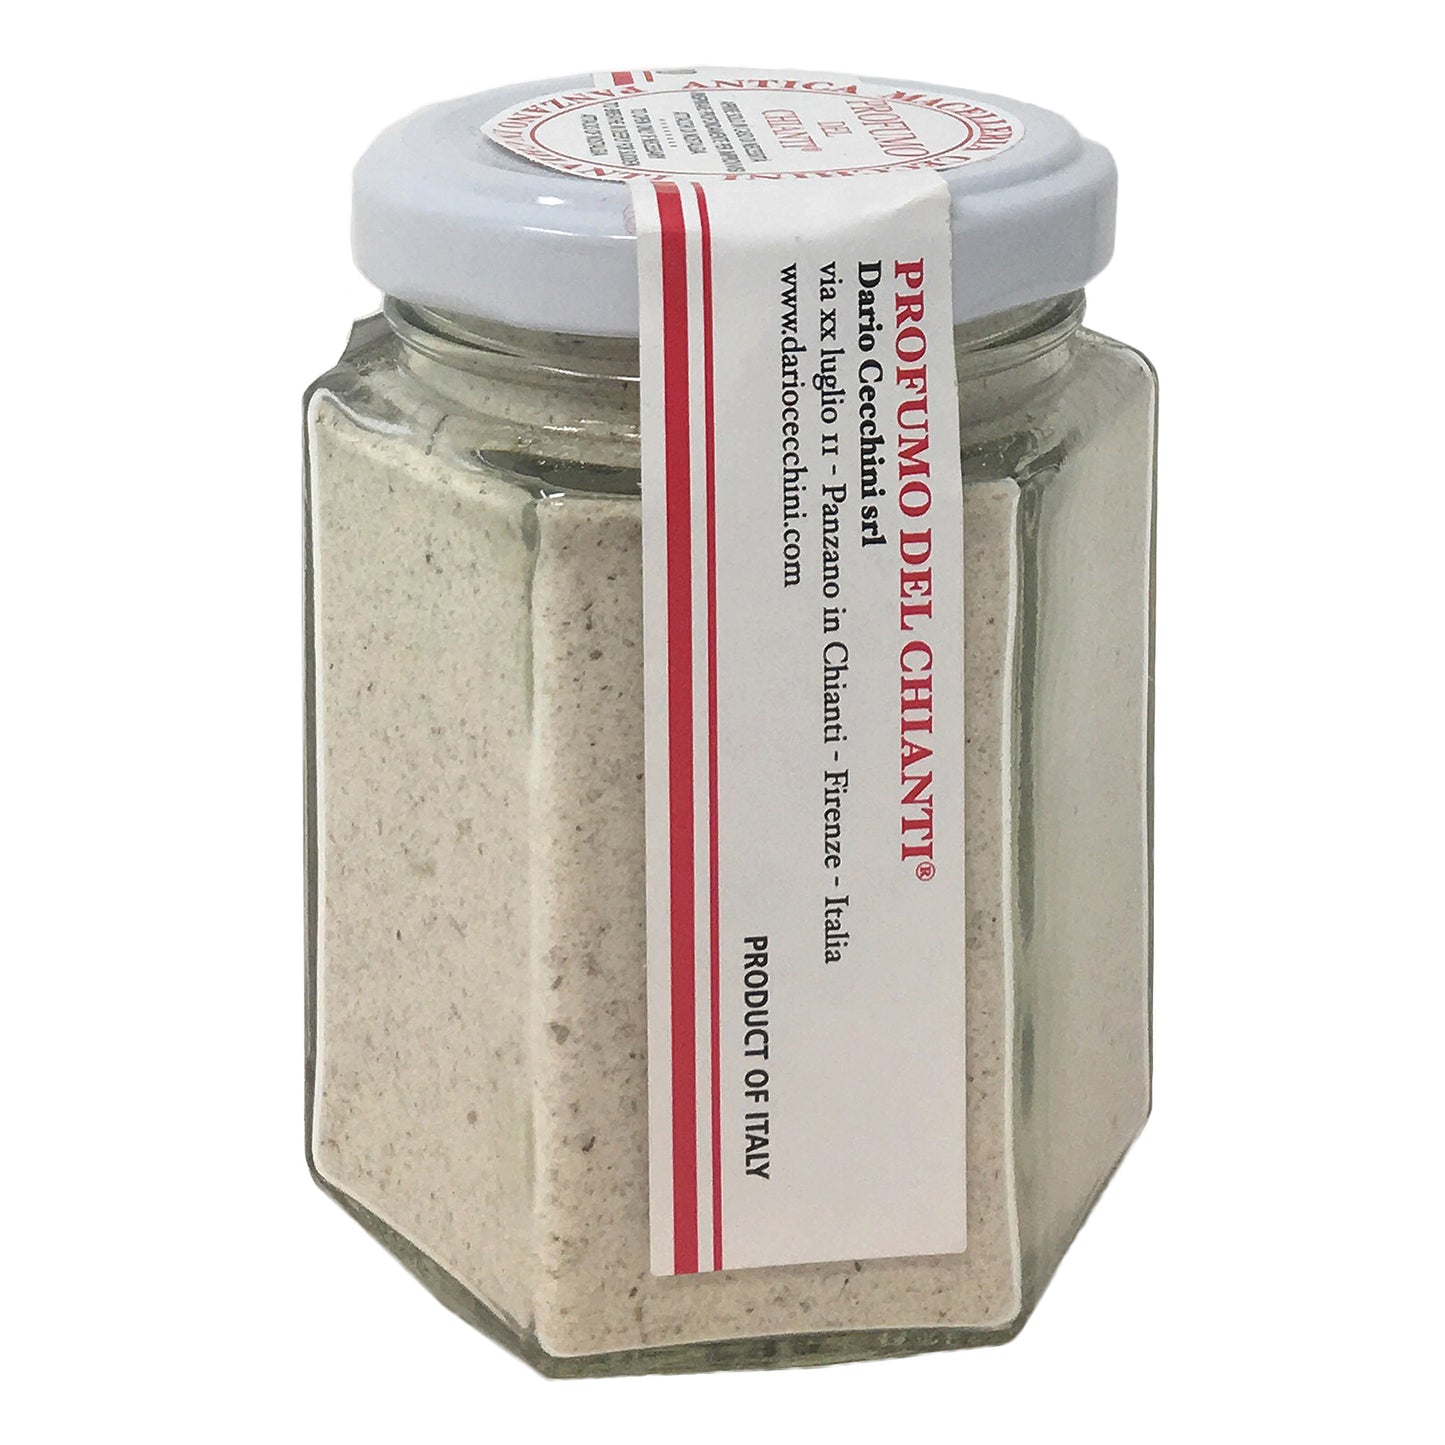 Mezcla de sal de hierbas Profumo del Chianti de Dario Cecchini 